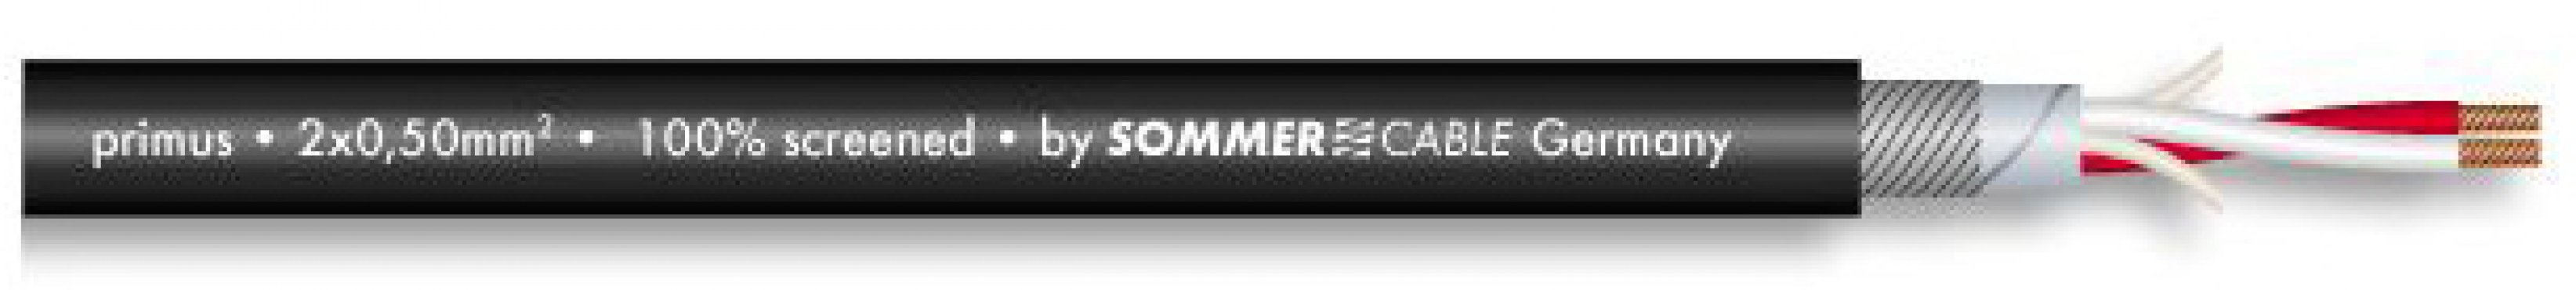 Sommer Cable 200-0151 PRIMUS - ČERNÝ